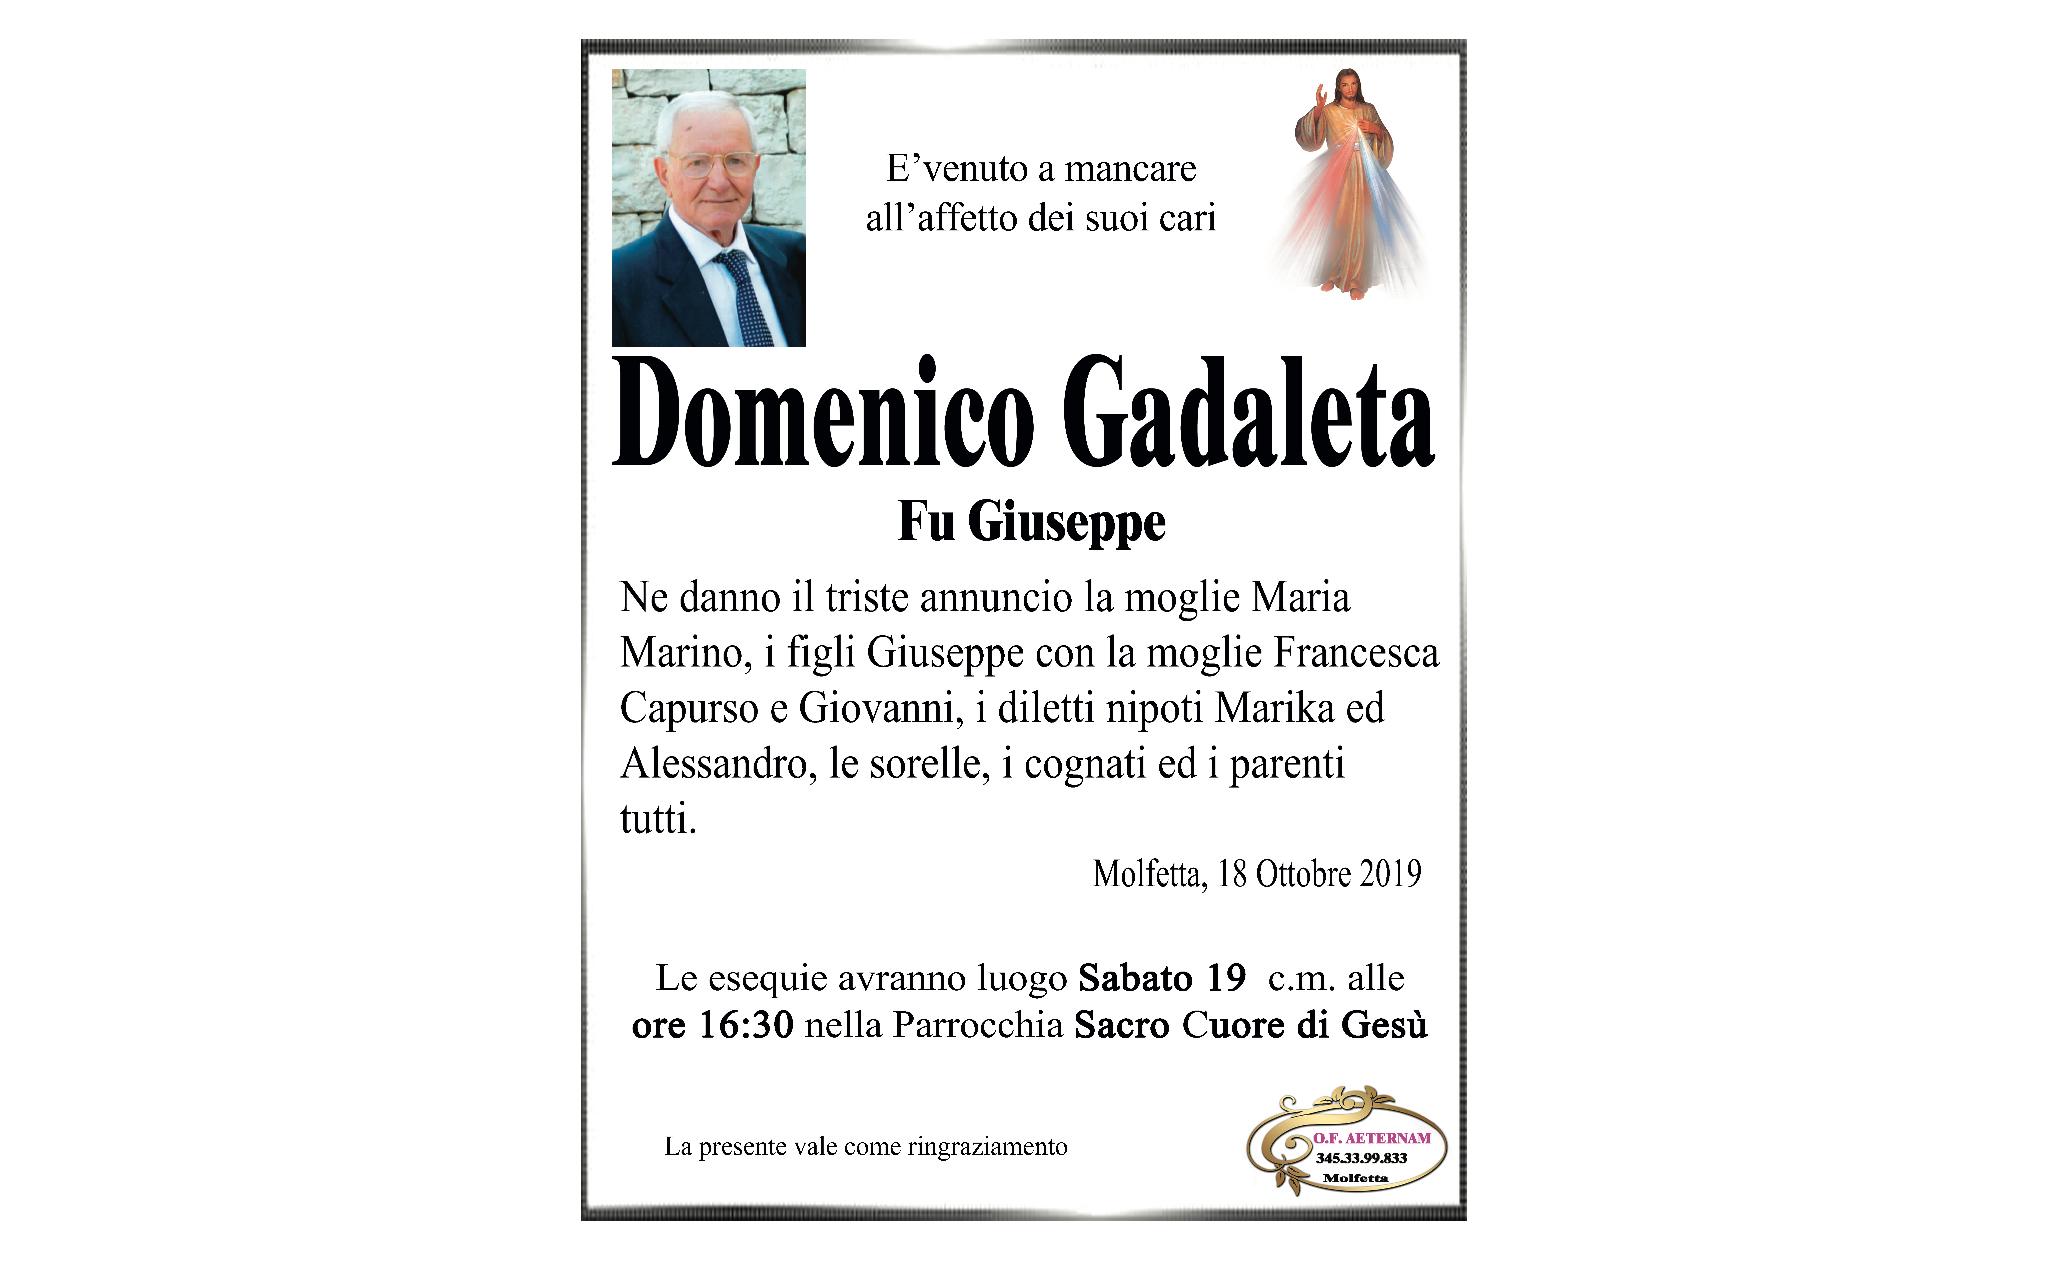 Domenico Gadaleta